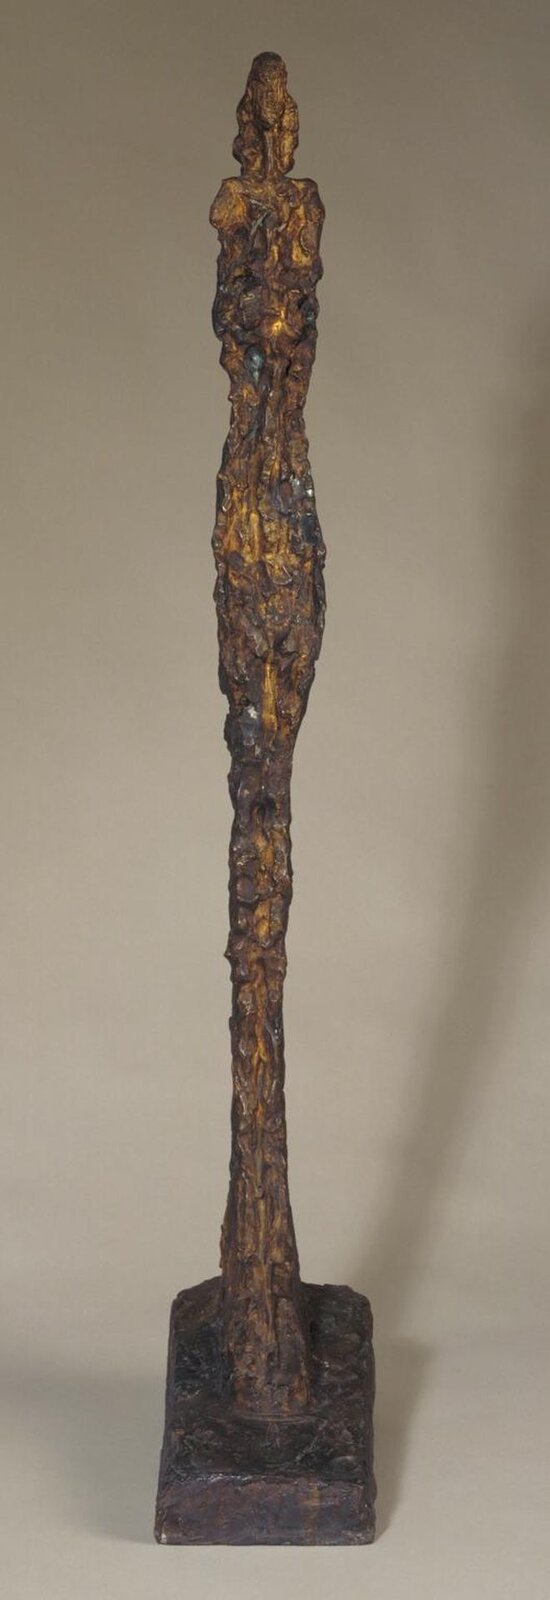 Ilustracja o kształcie pionowego prostokąta przedstawia rzeźbę Alberta Giacomettiego „Kobiety weneckie” z numerem IX. Rzeźba oparta są na szkieletowej konstrukcji. Posiada chropowatą fakturę. Sztywno stoi, nogi ma zespolone, stopy duże, masywne., głowę niewielką, tułów nieco zgeometryzowany, nie posiada wyodrębnionych rąk, jest jedną zwartą bryłą. Podstawą jest duża płyta. Ustawiona została na niewielkiej, kwadratowej podstawie. 